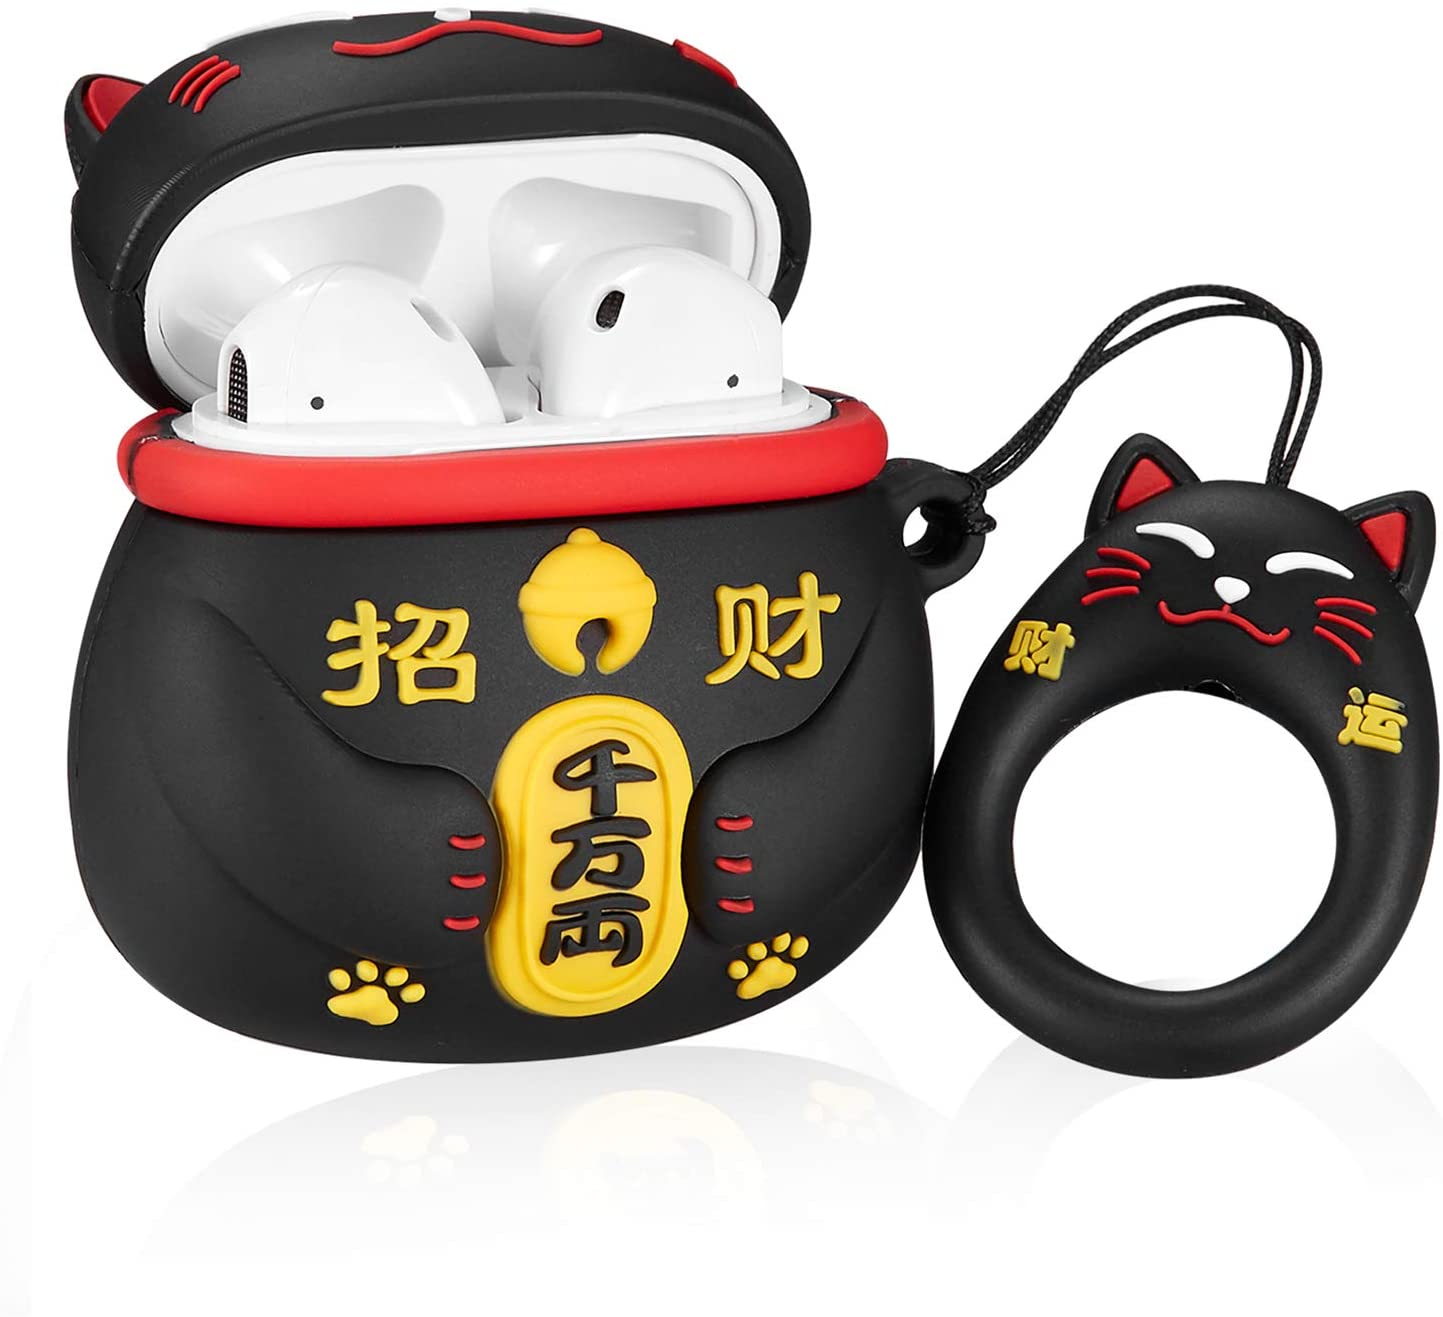 Black Maneki-neko Lucky Cat Airpods Case